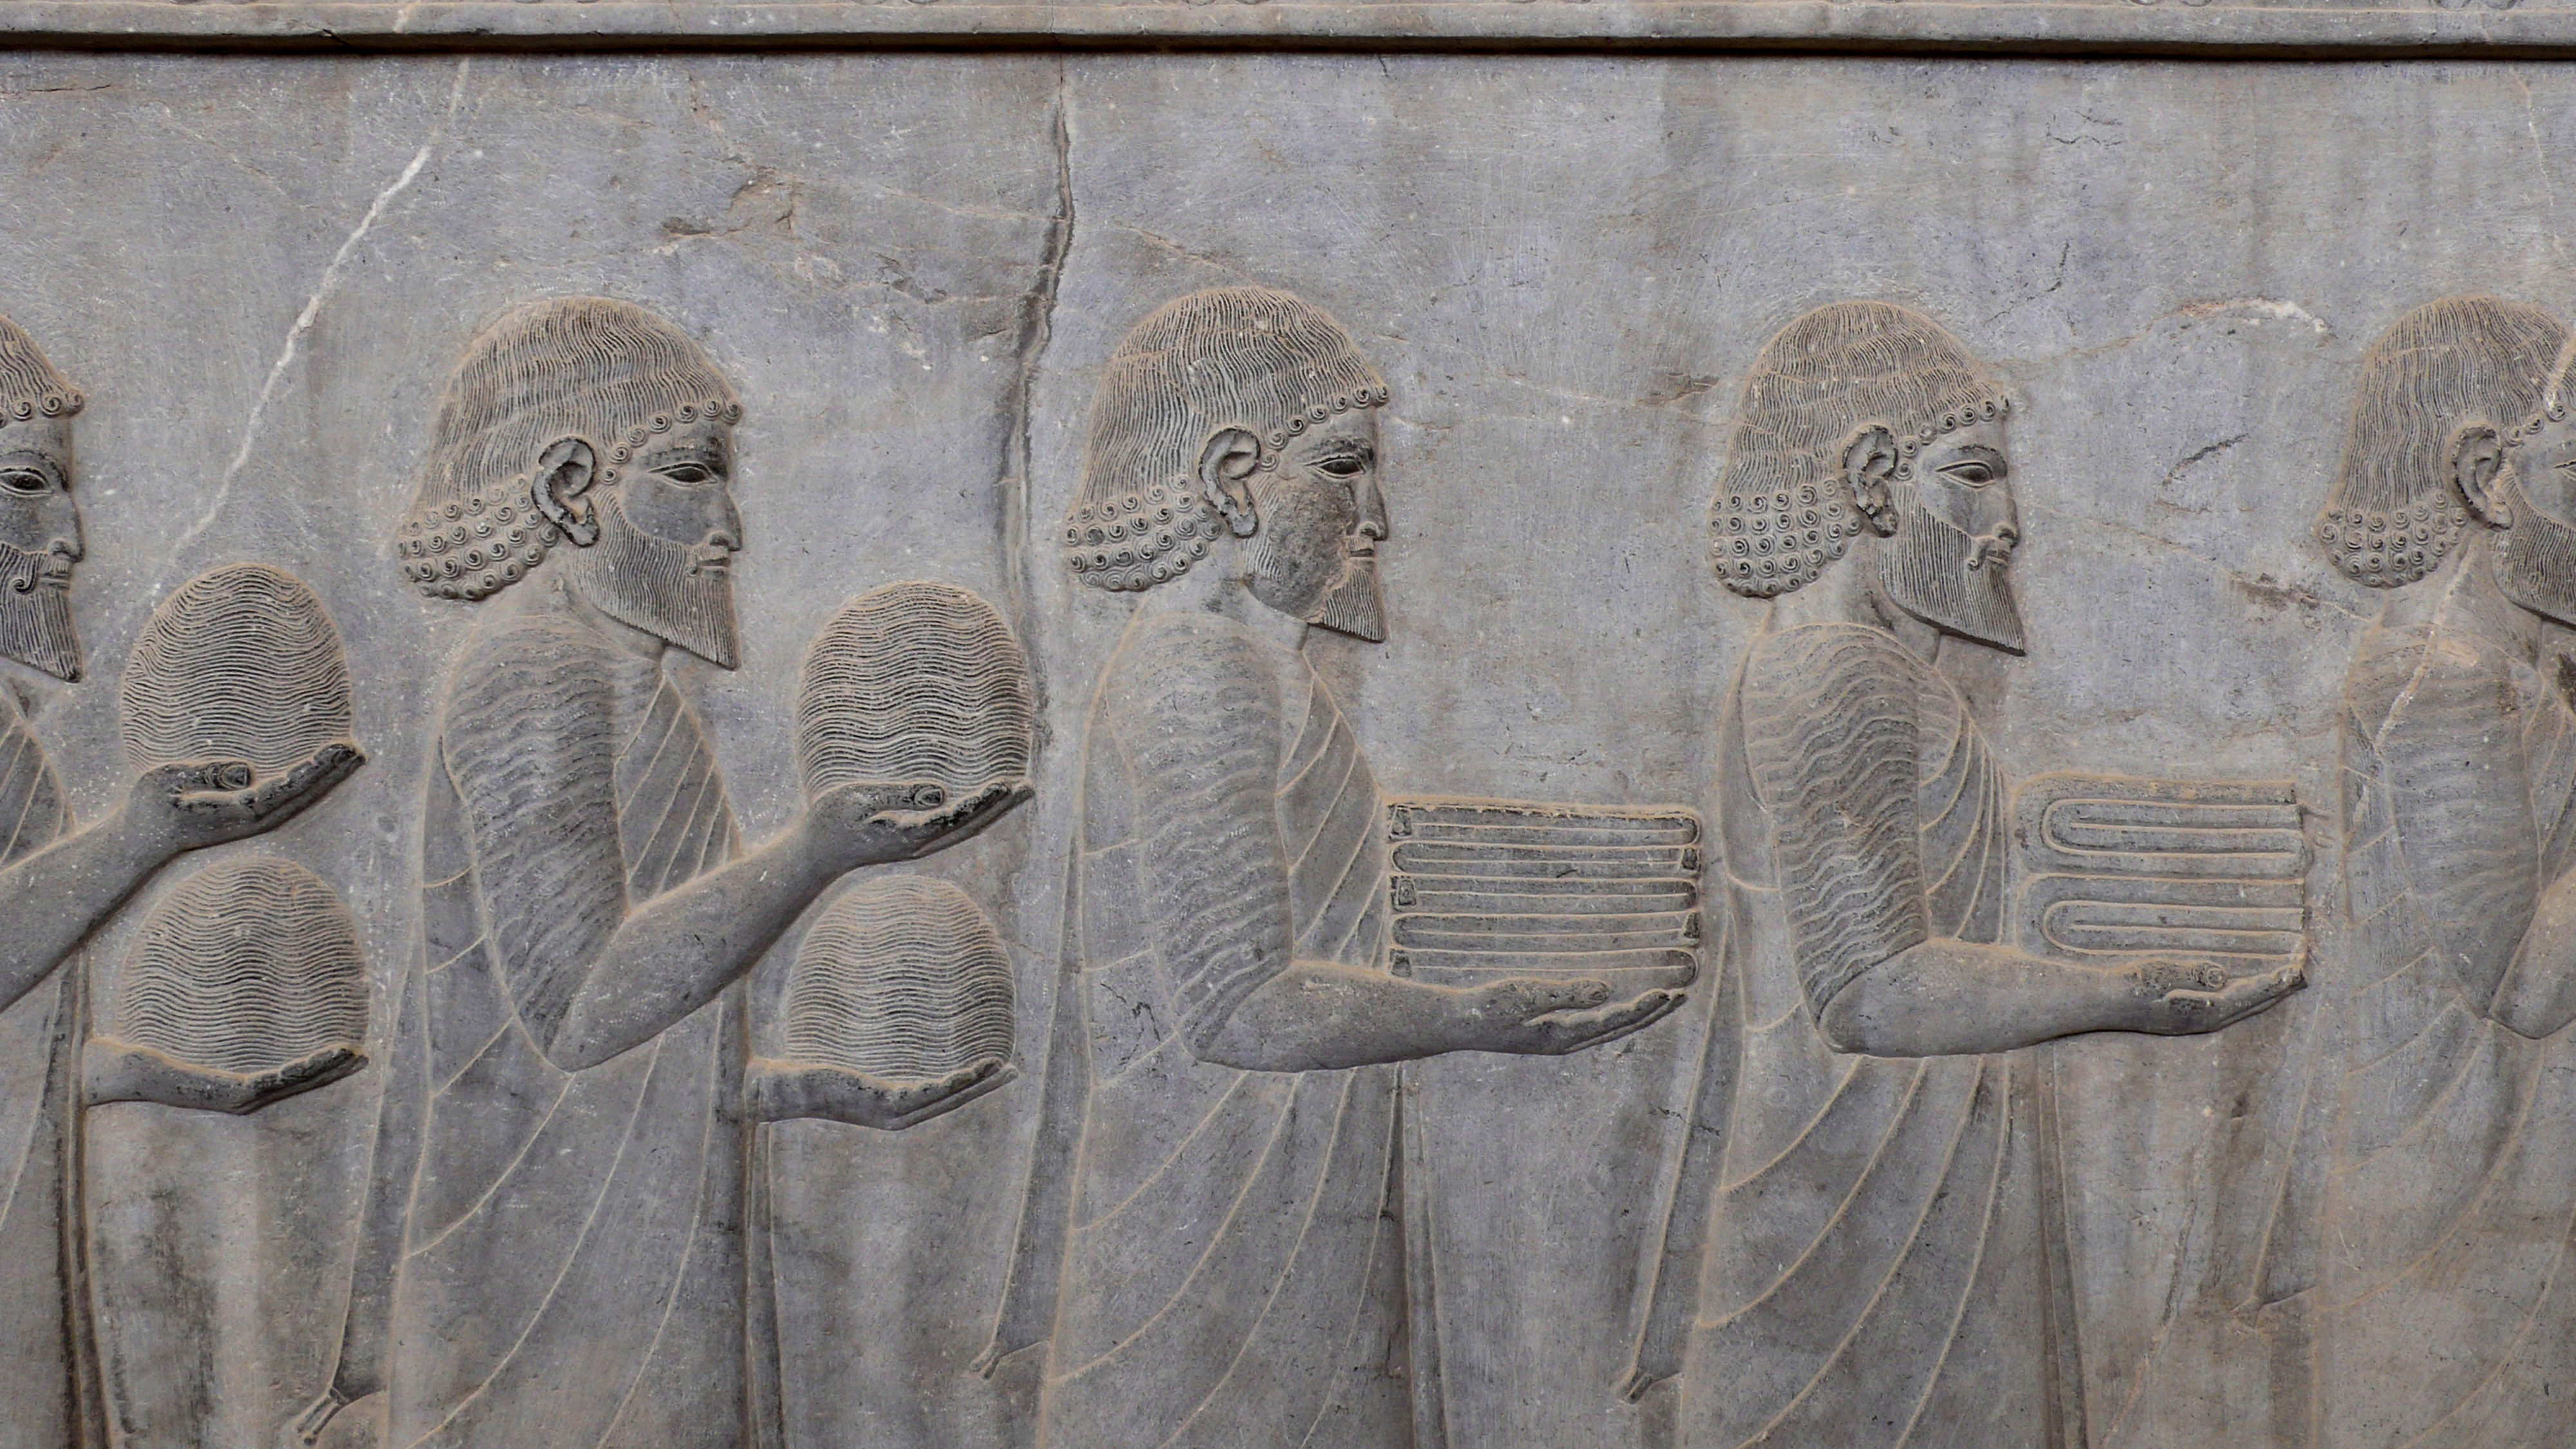 Iranische Kulturstätten in Gefahr? Persepolis Pionier